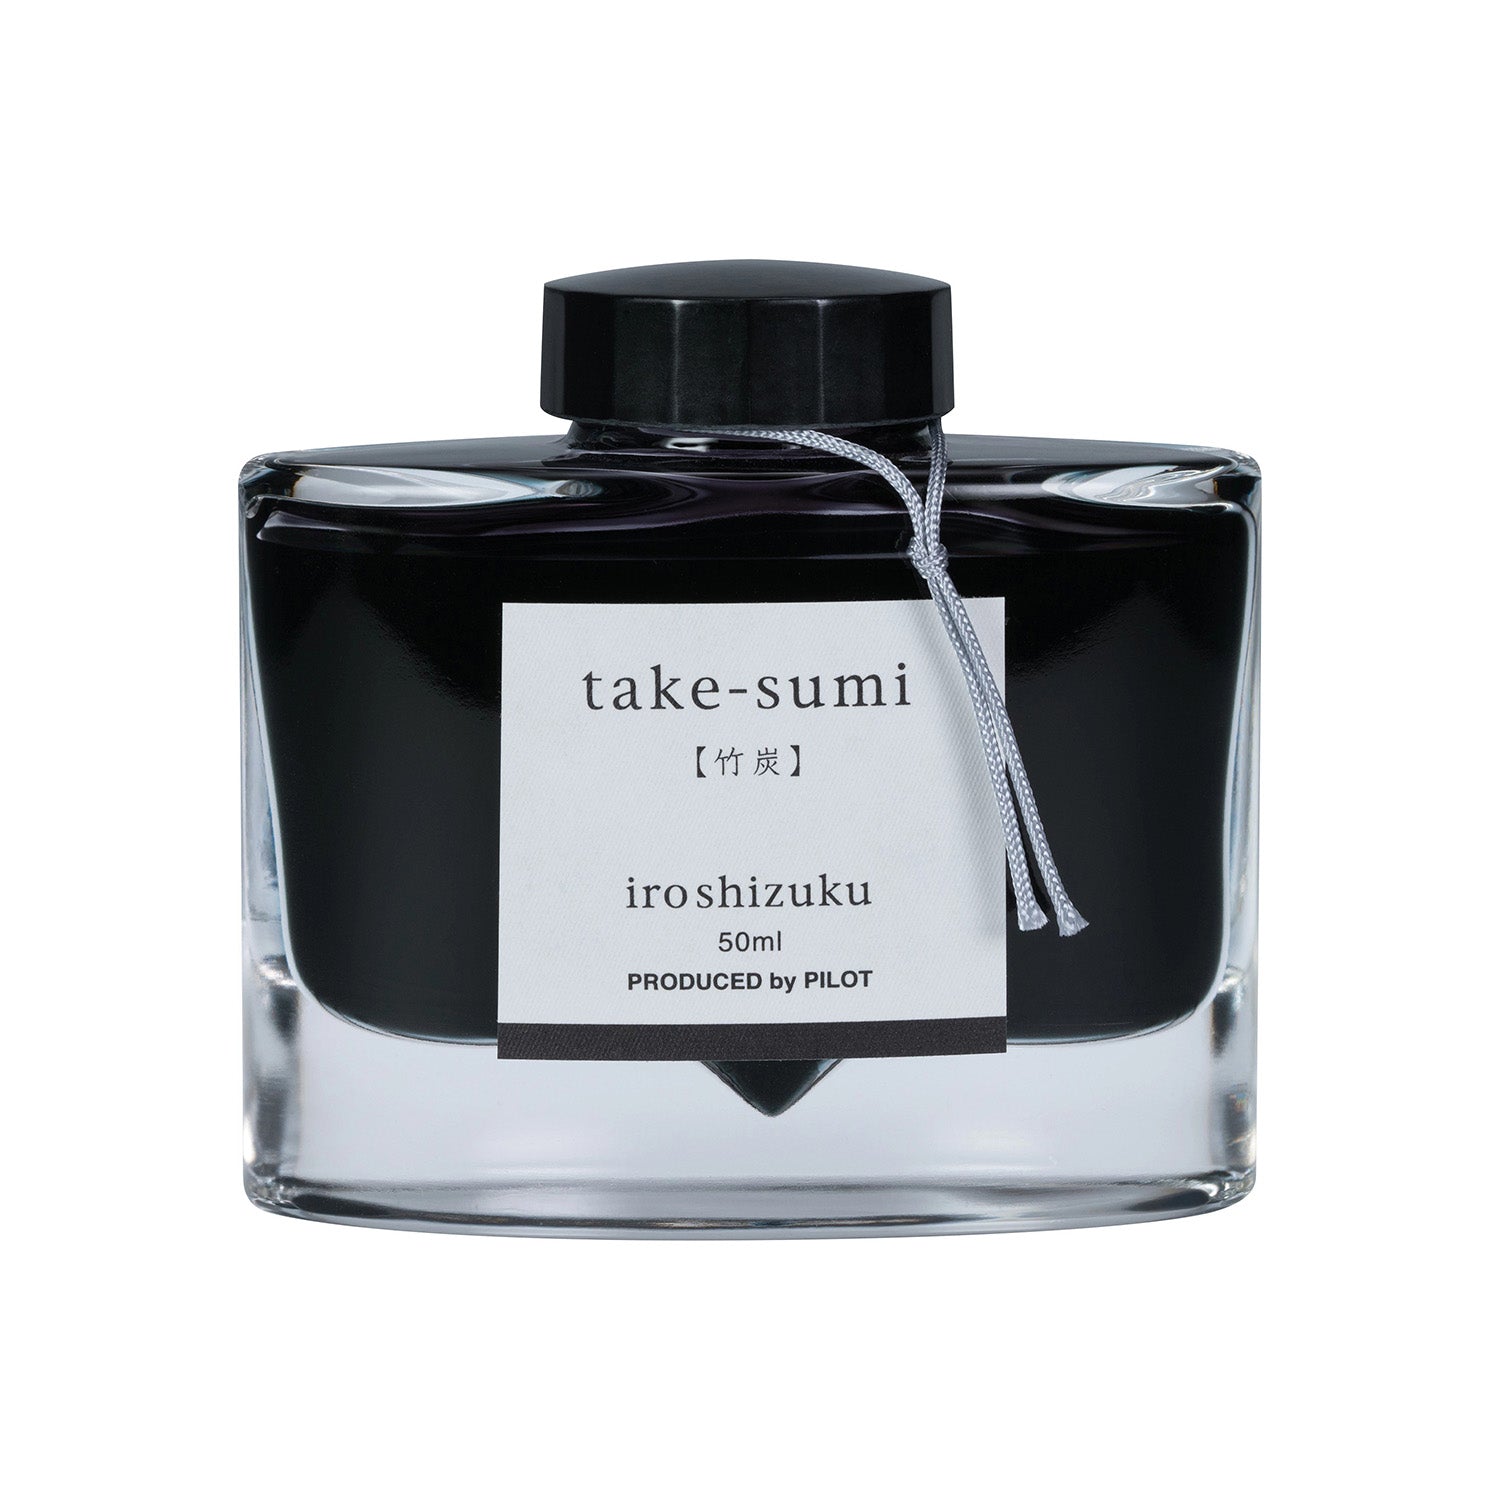 Pilot Iroshizuku Fountain Pen Ink - Take-sumi (Bamboo Coal) - 50 ml Bottle Black